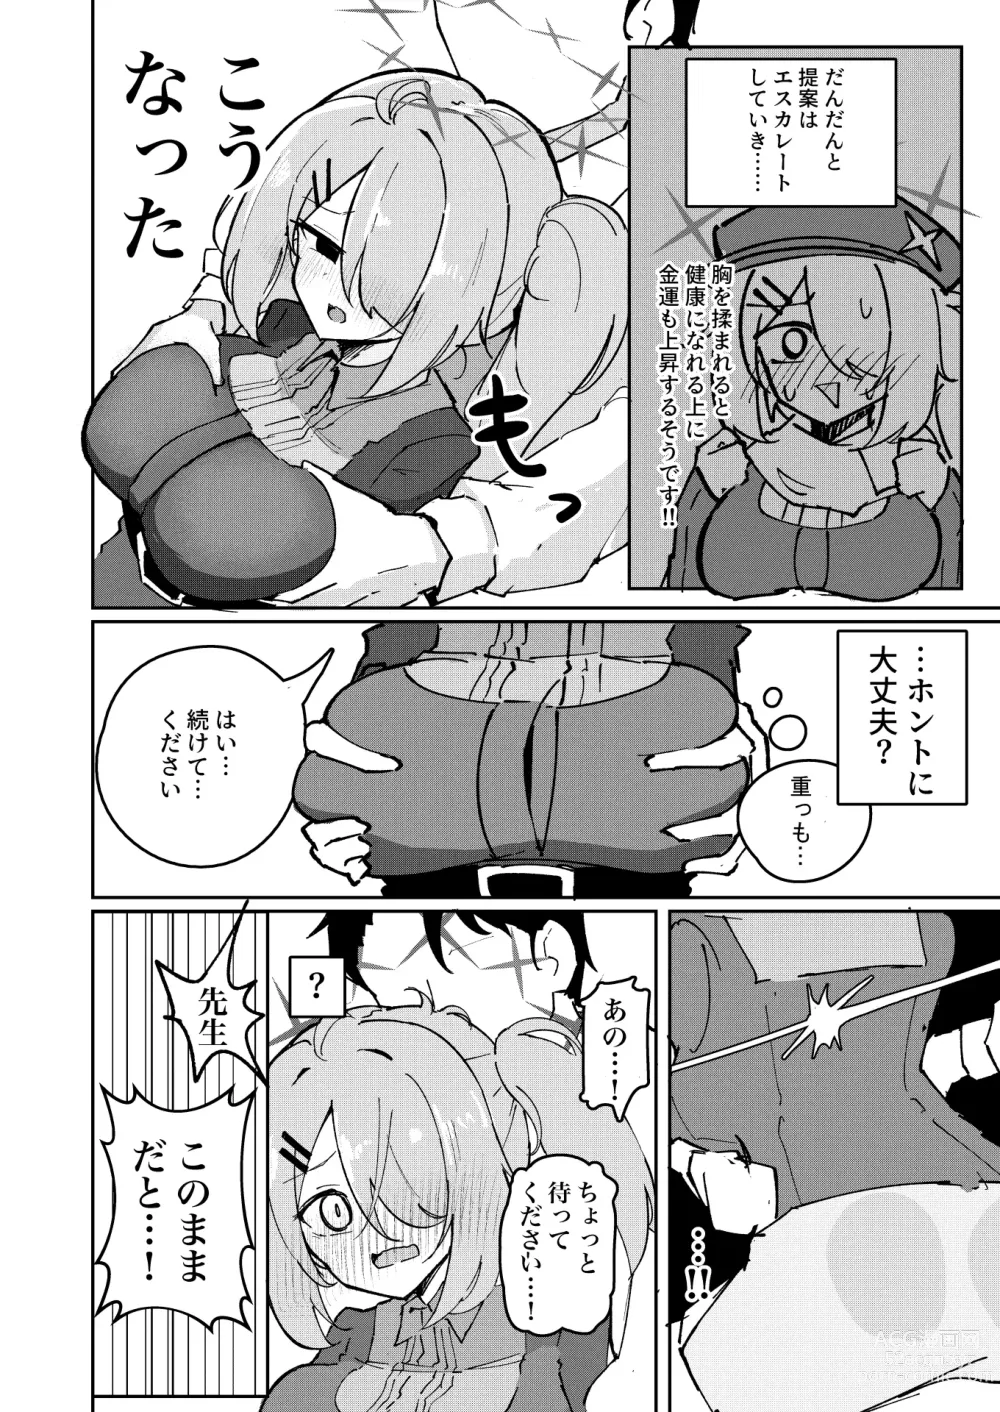 Page 4 of doujinshi Sensei to Seito wa Mou Owari